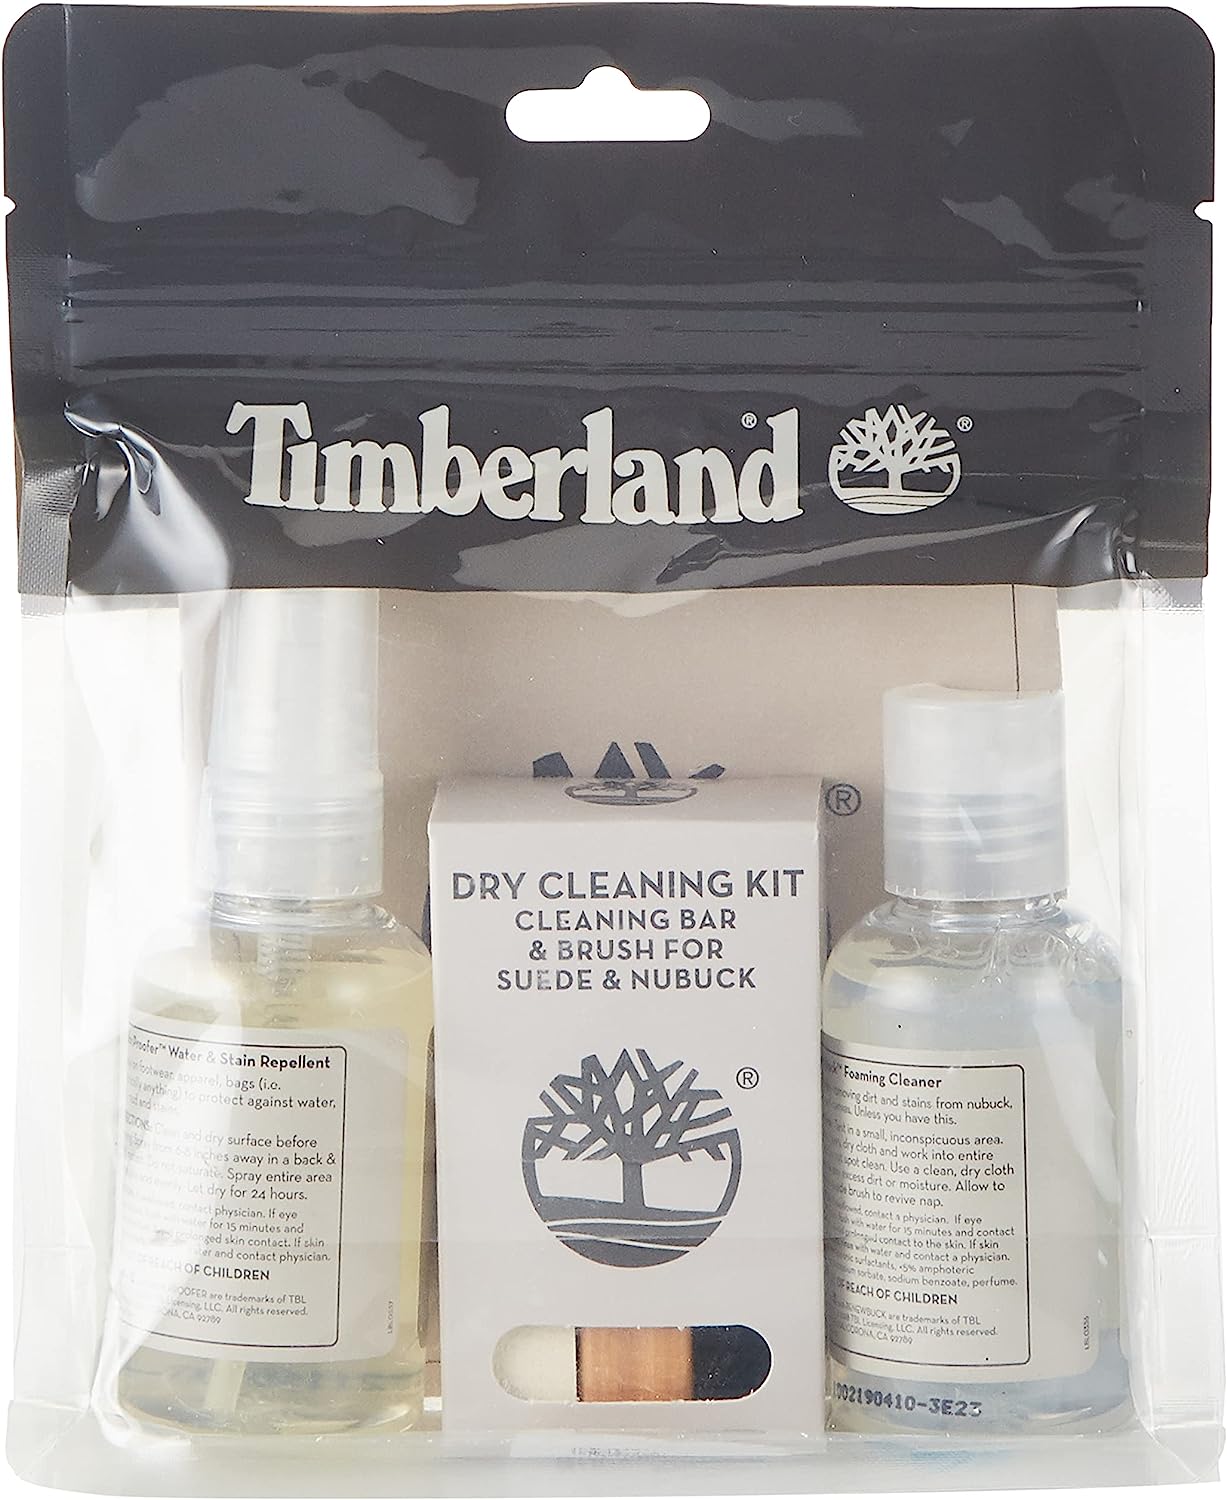 Timberland Unisex-Adult Travel Kit Shoe Care Product [...]